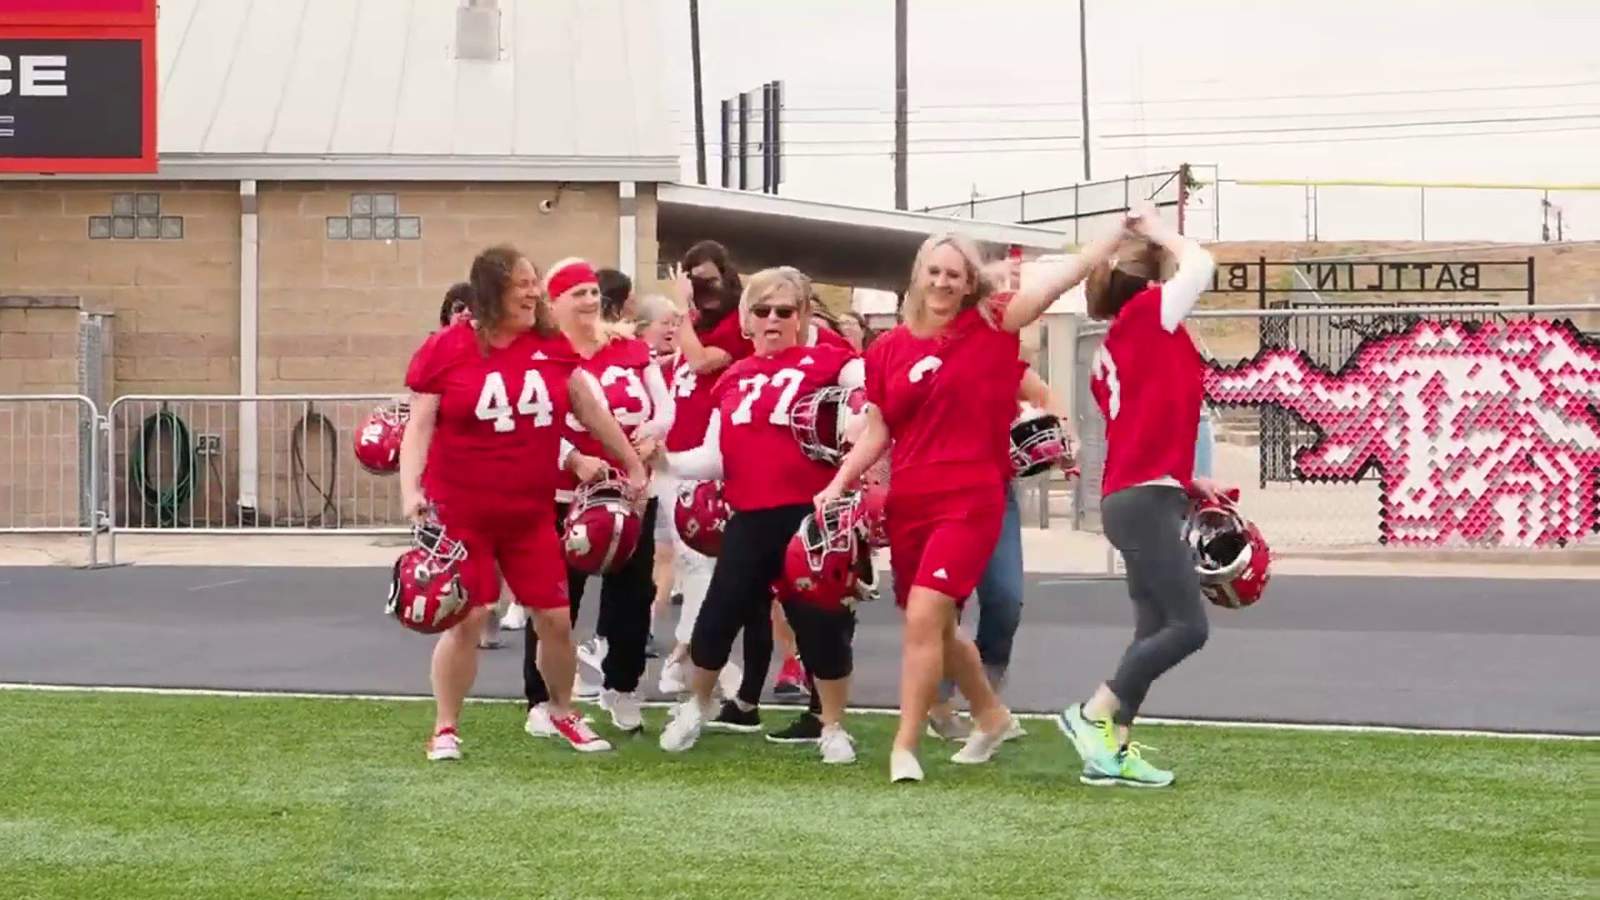 Fredericksburg football moms get ‘goofy’ in hype video for seniors